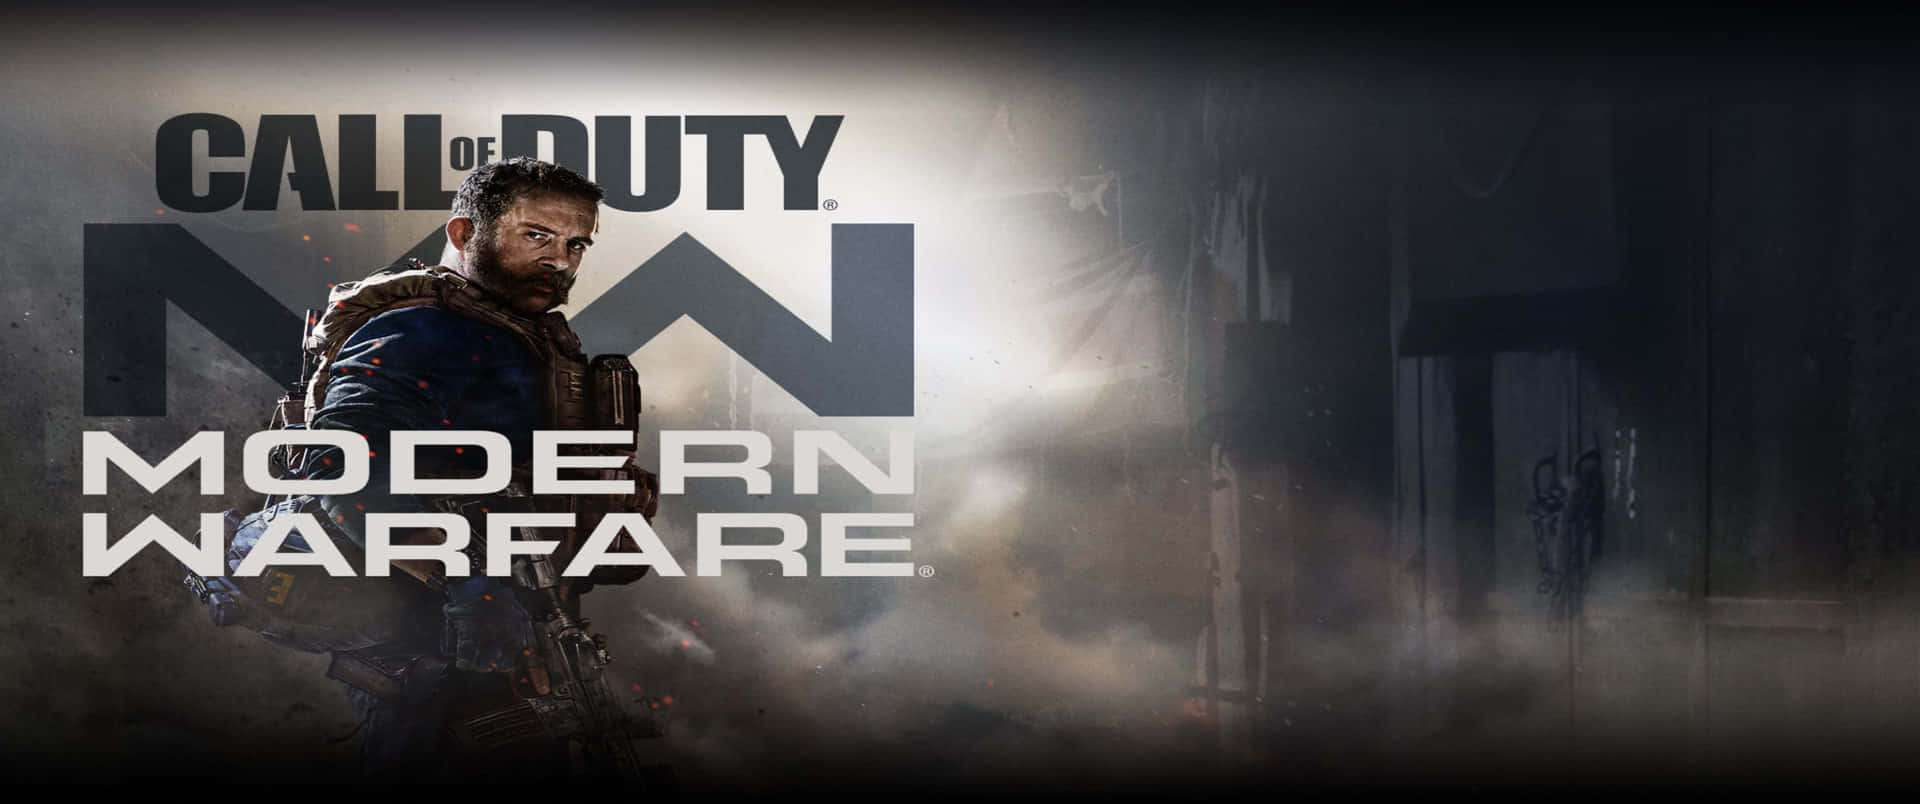 Fondode Pantalla De John Price Con Título 3440x1440p De Call Of Duty Modern Warfare.